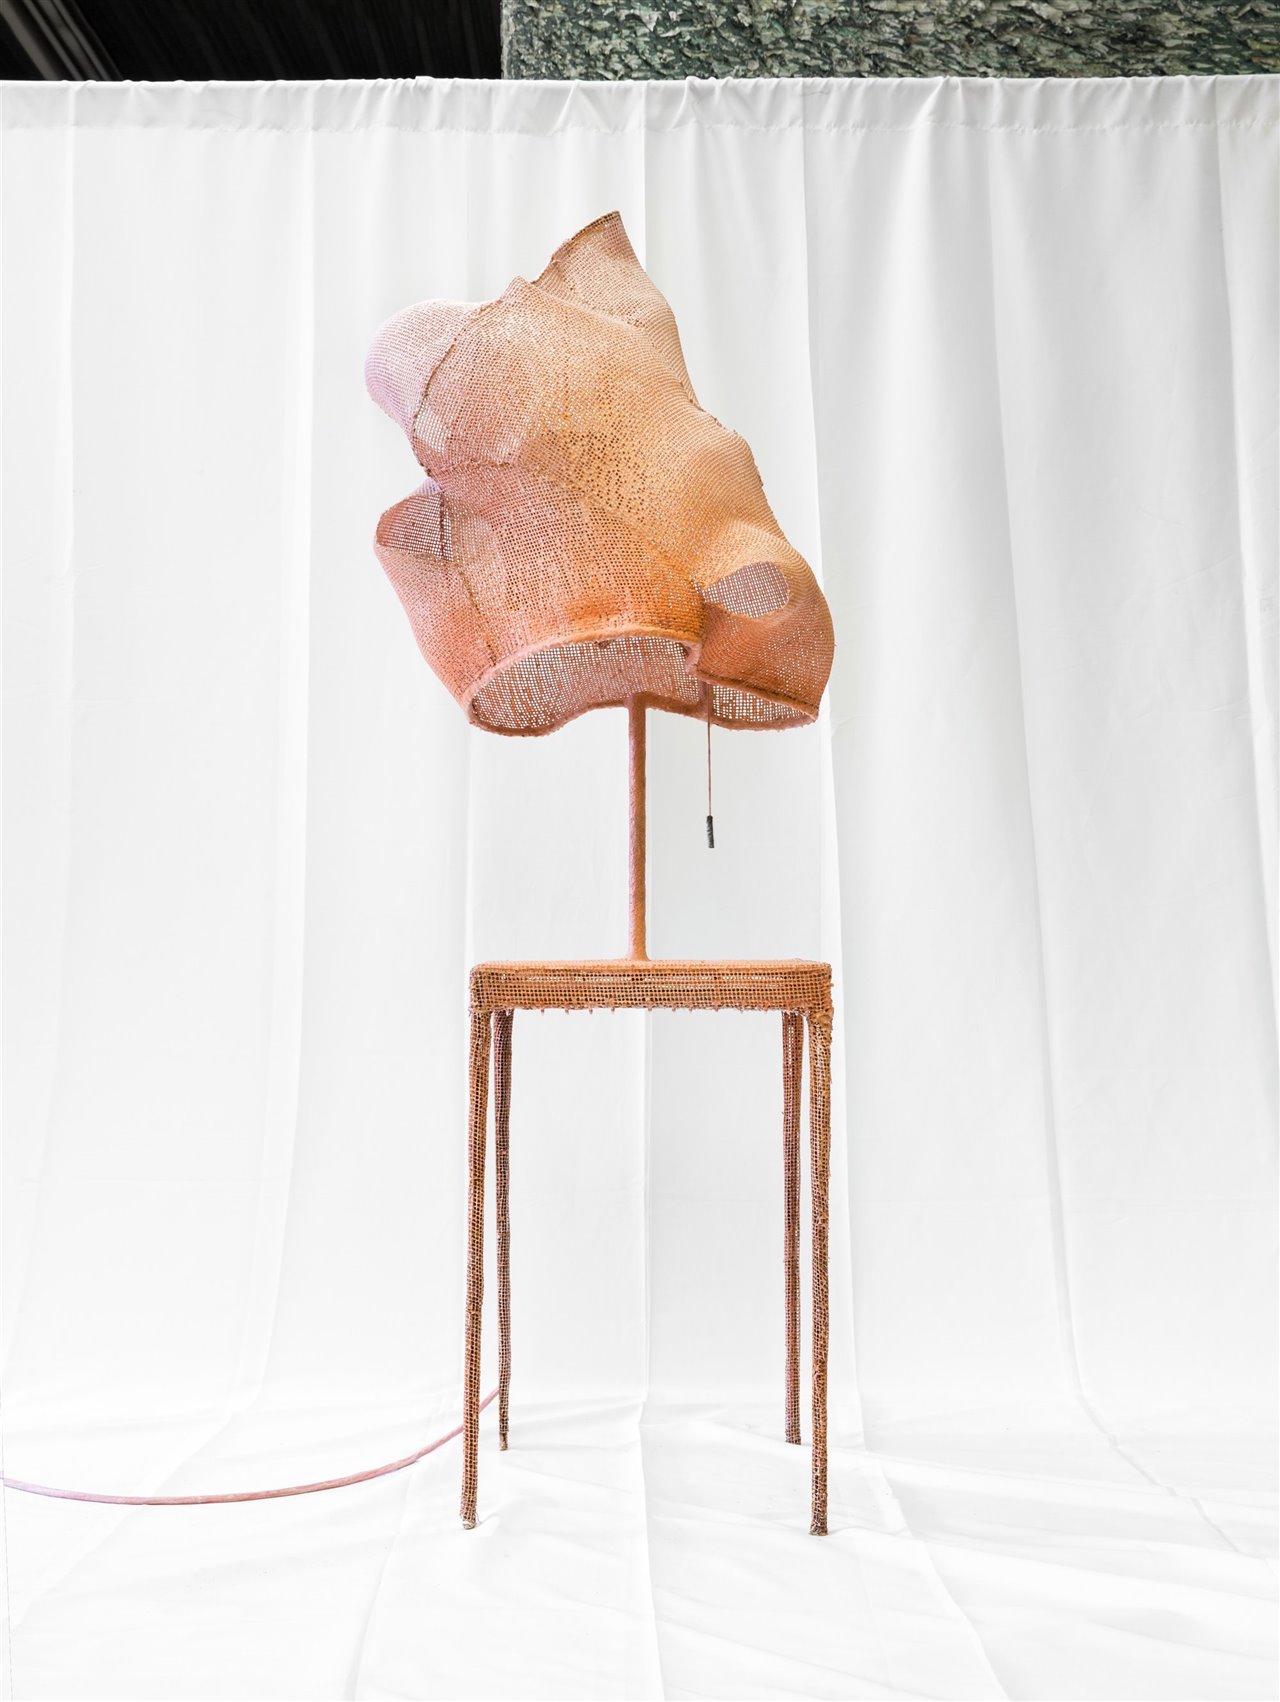 Nacho Carbonell Table Cocoon 8 (Mesa Capullo 8), 2015, Cortesía de Carpenters Workshop Gallery